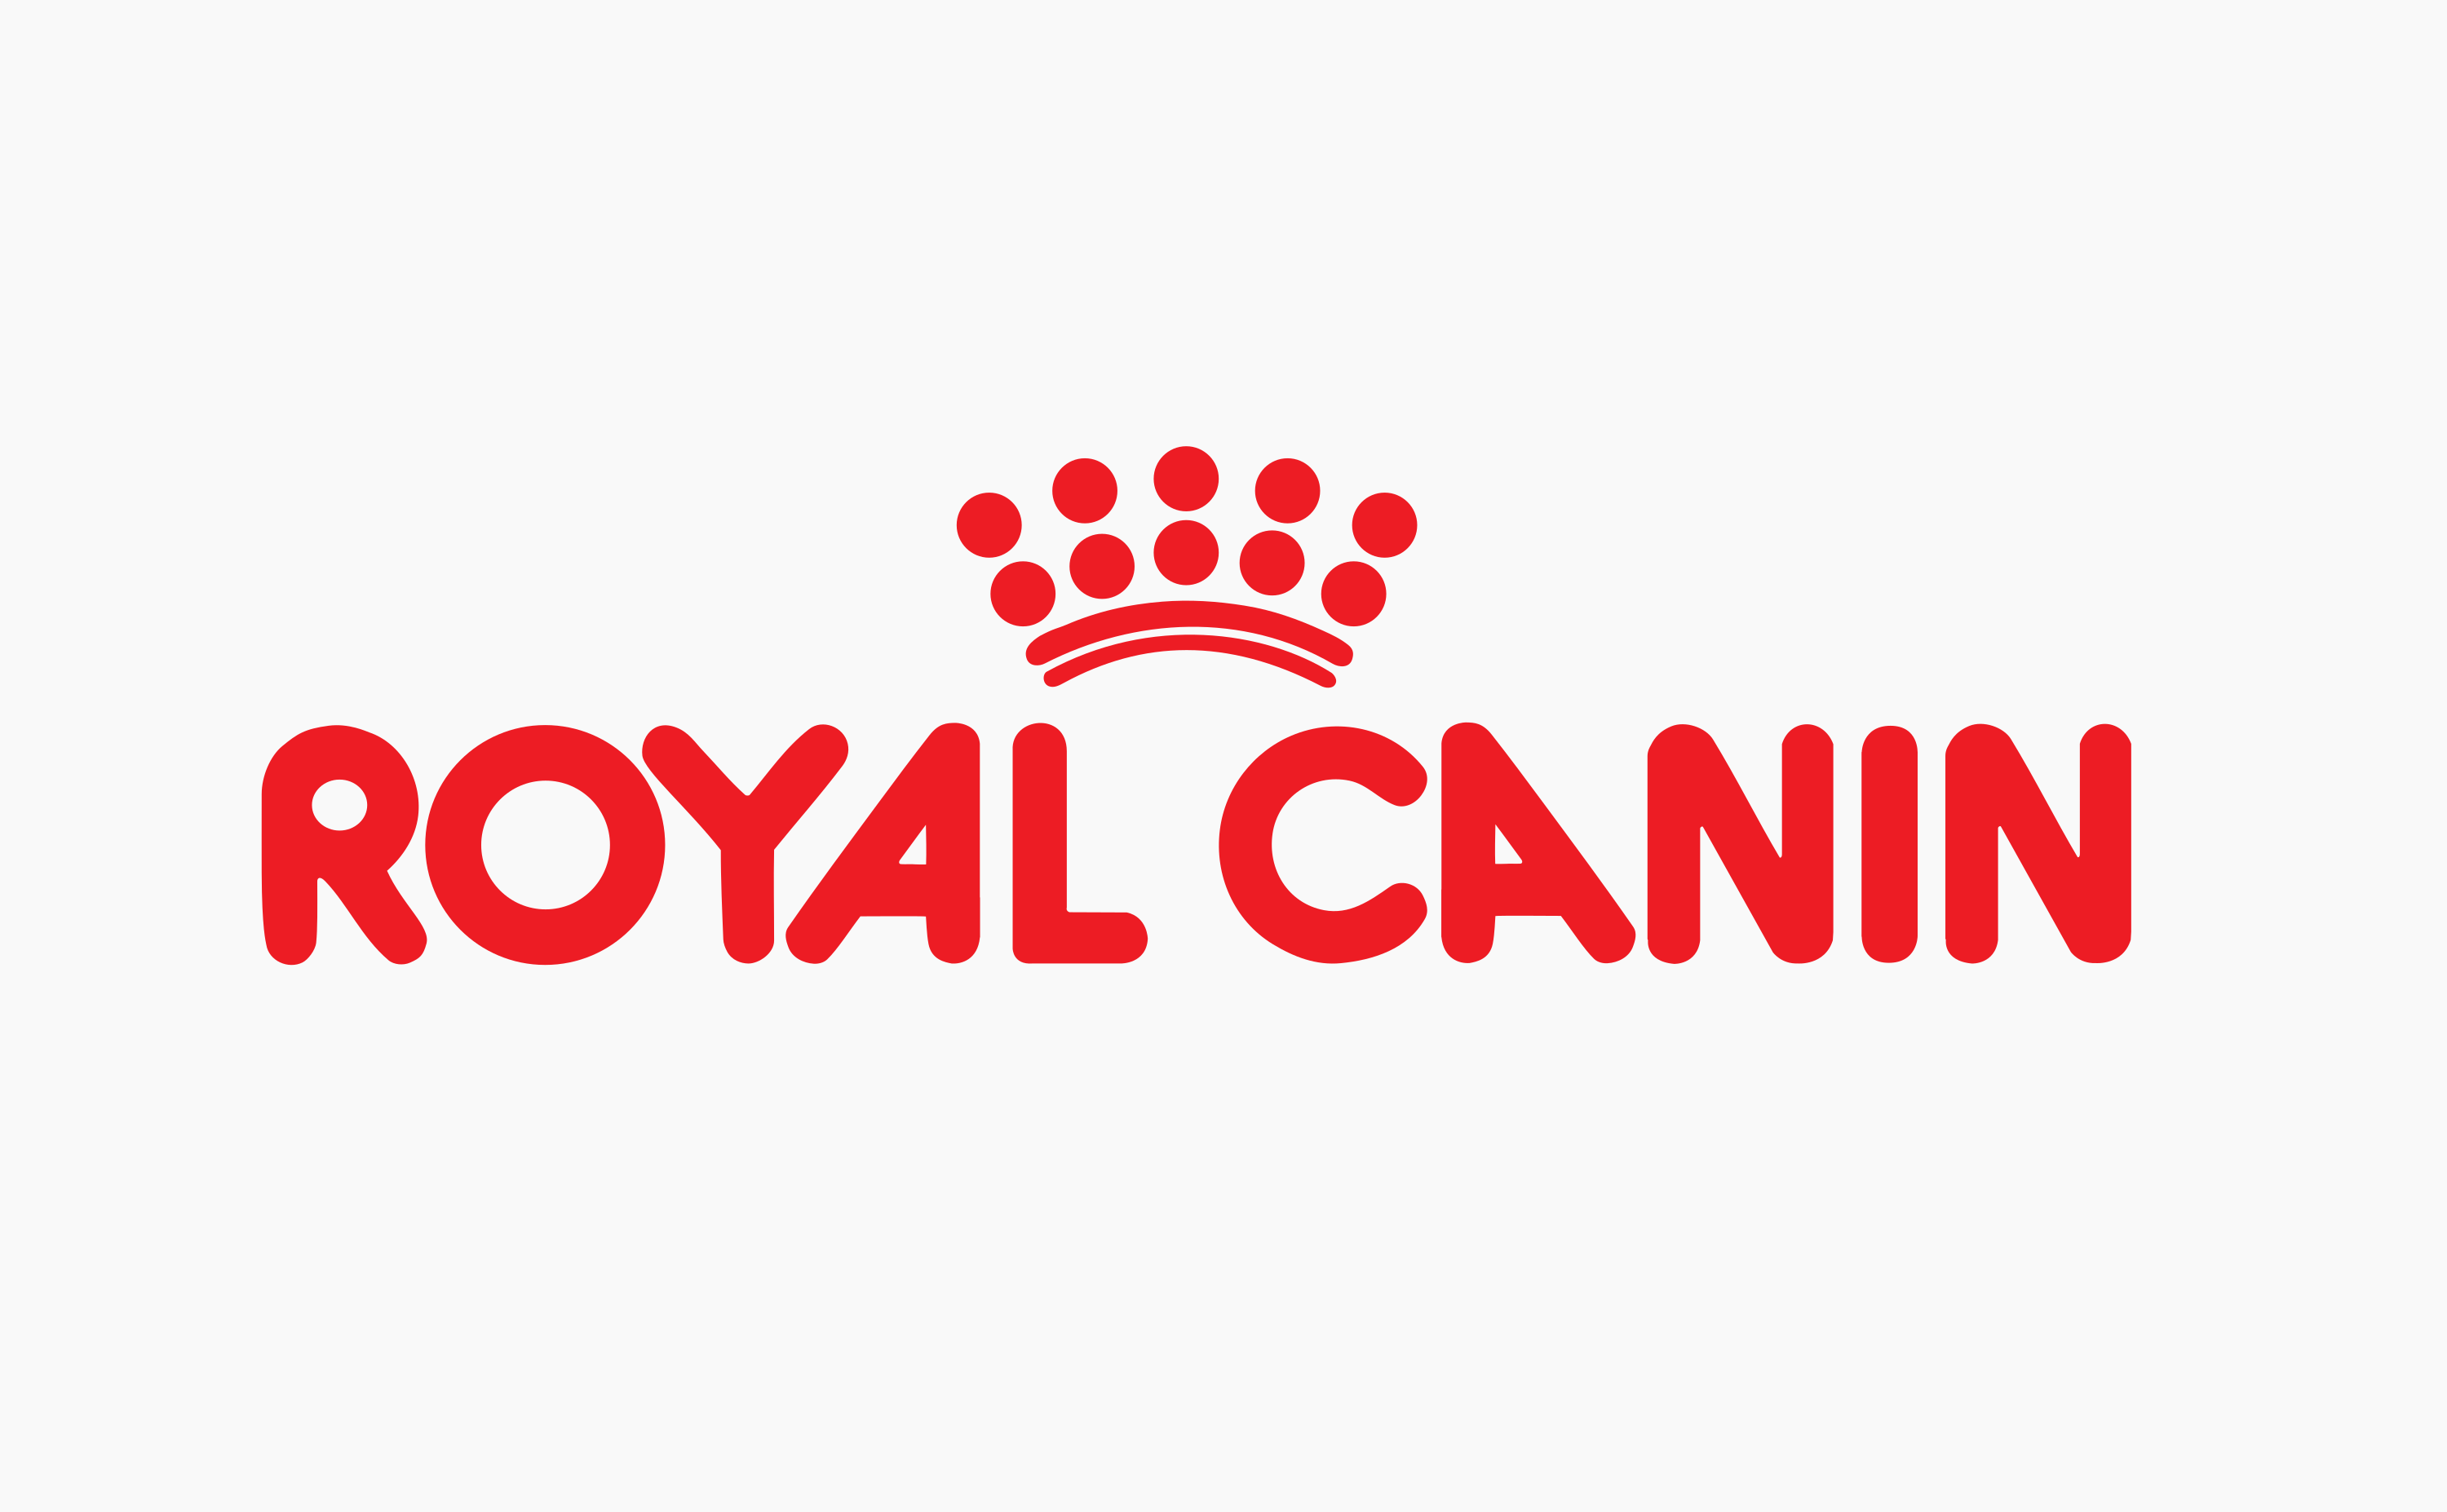 royal canin logo 8 - Royal Canin Logo